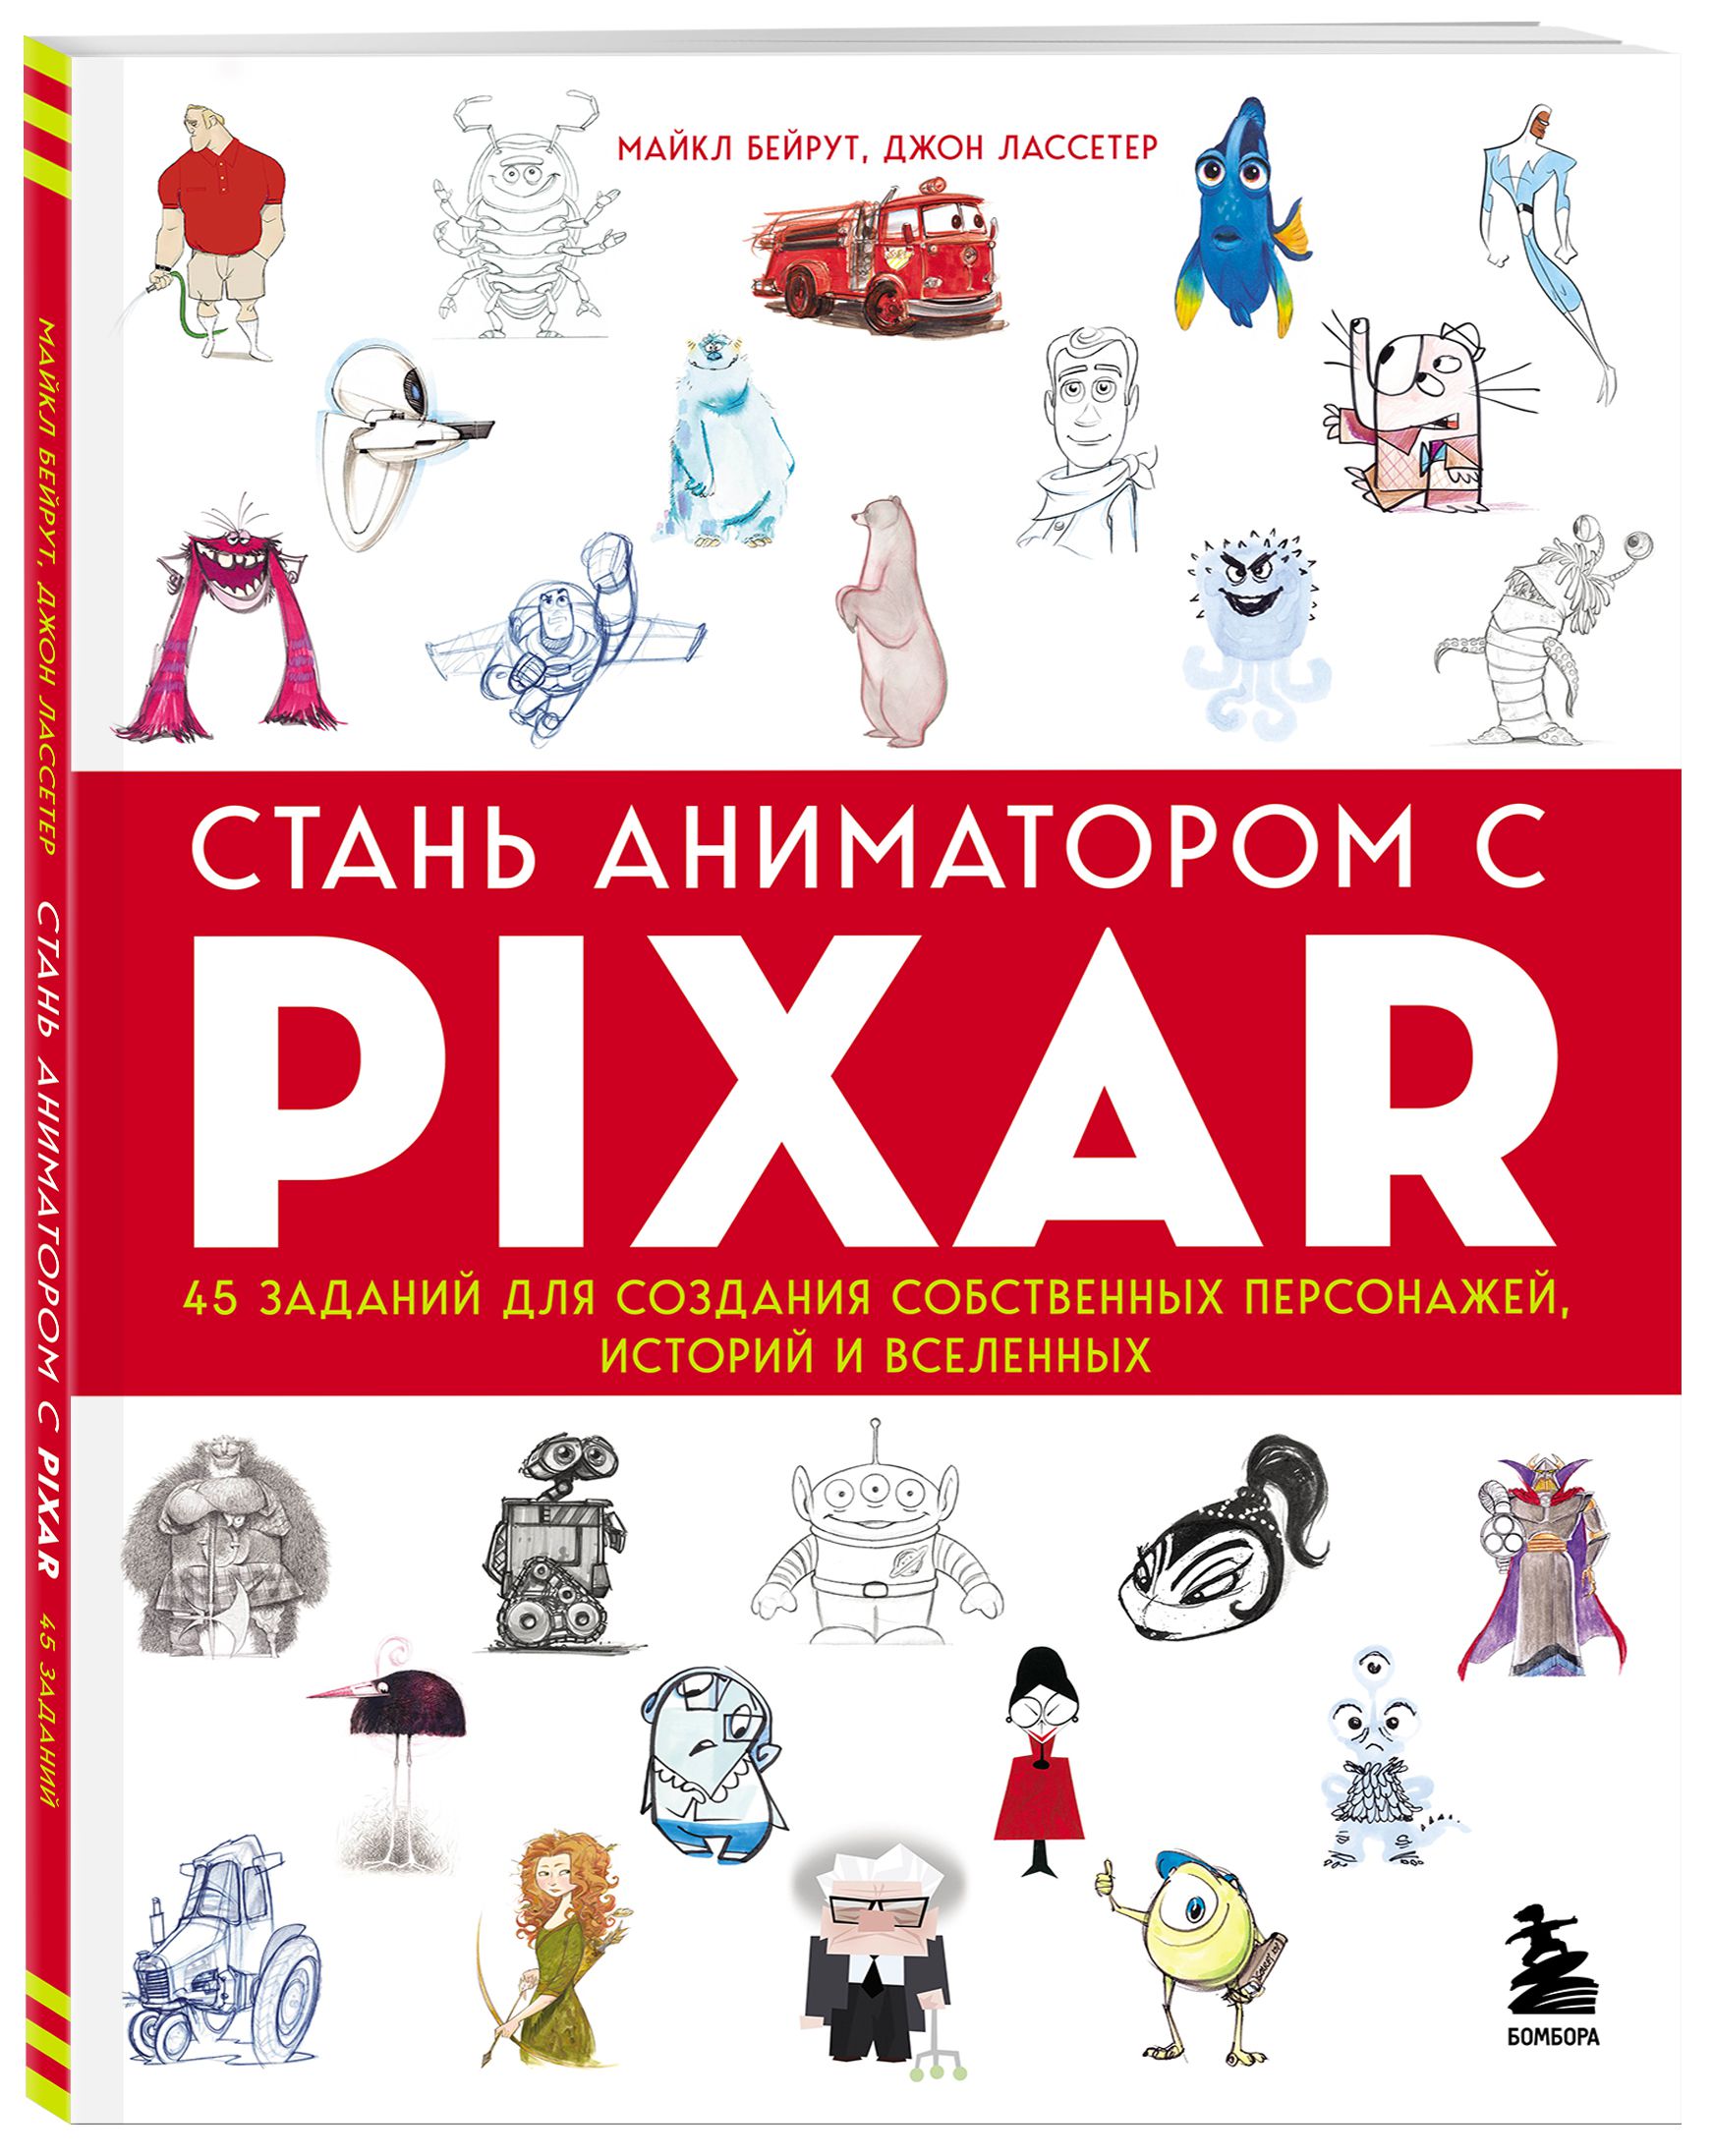 Стань аниматором с Pixar: 45 заданий для создания собственных персонажей, историй и вселенных от 1С Интерес